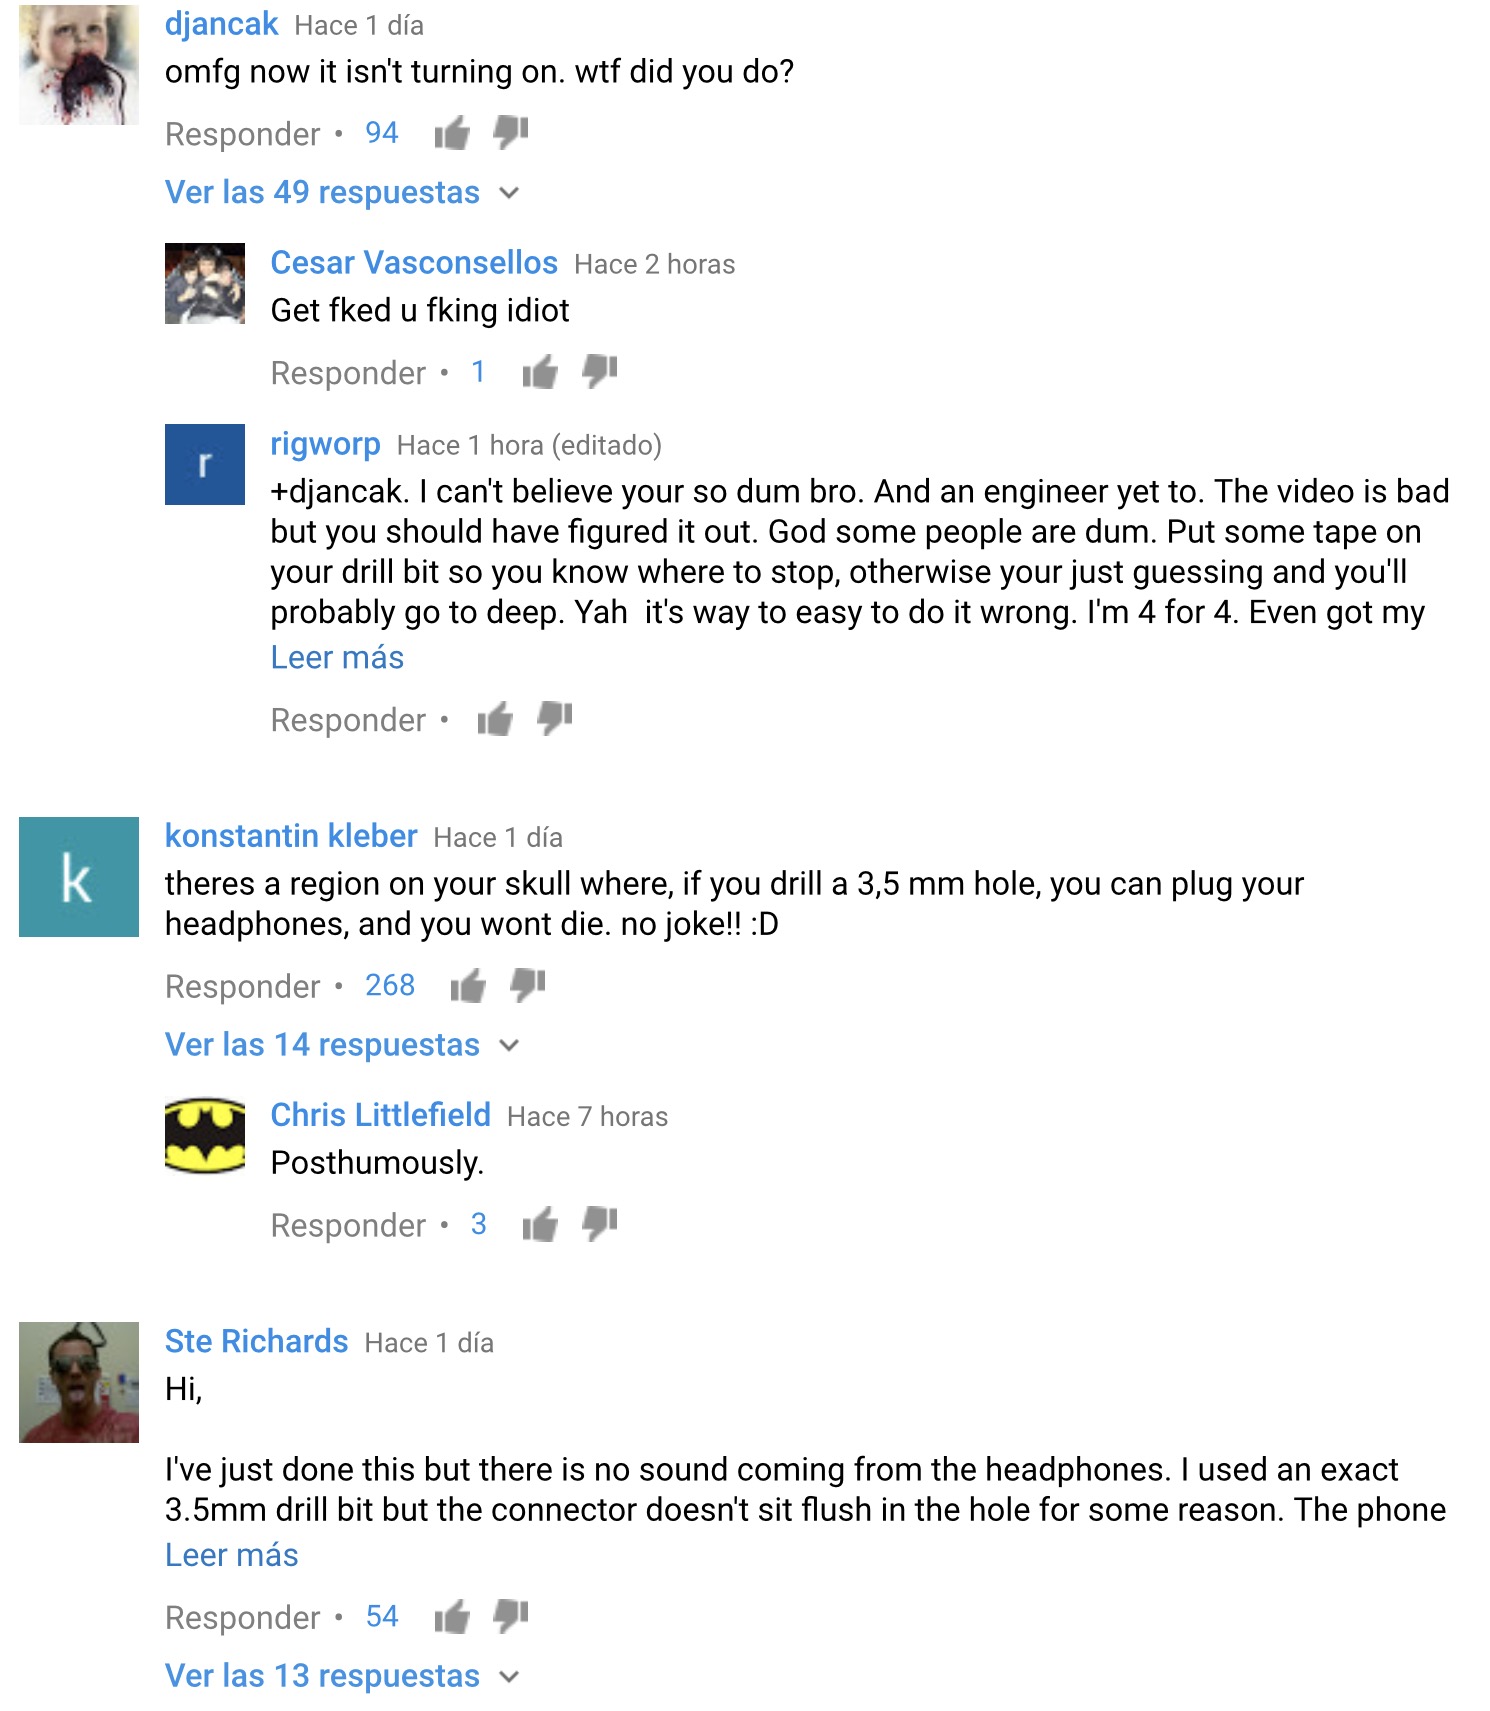 Comentarios trolleando en Youtube